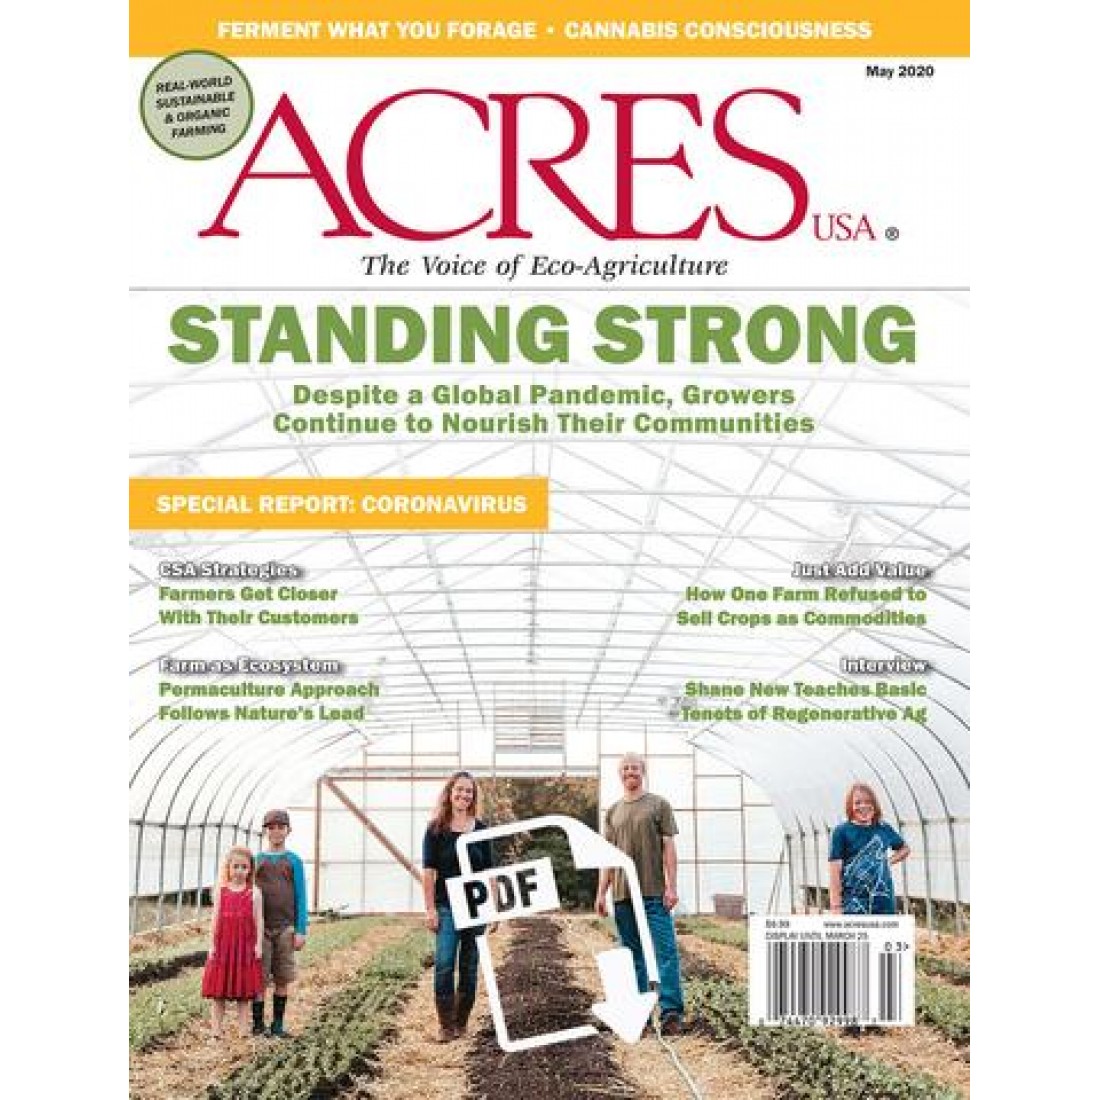 Acres USA Magazine Subscriber Services